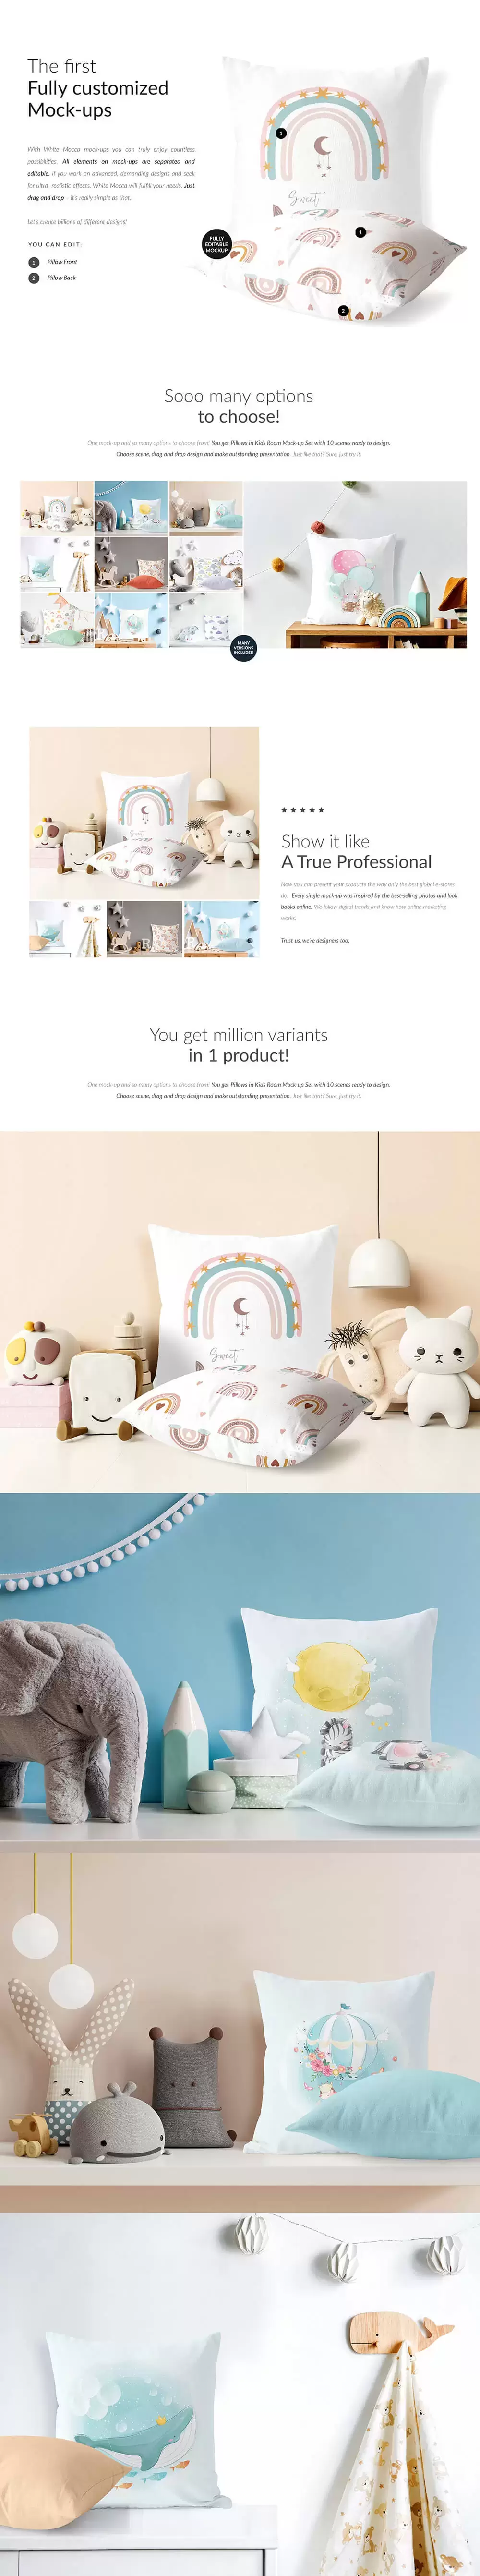 儿童房间场景枕头图案设计样机[1.19GB,PSD]免费下载插图1